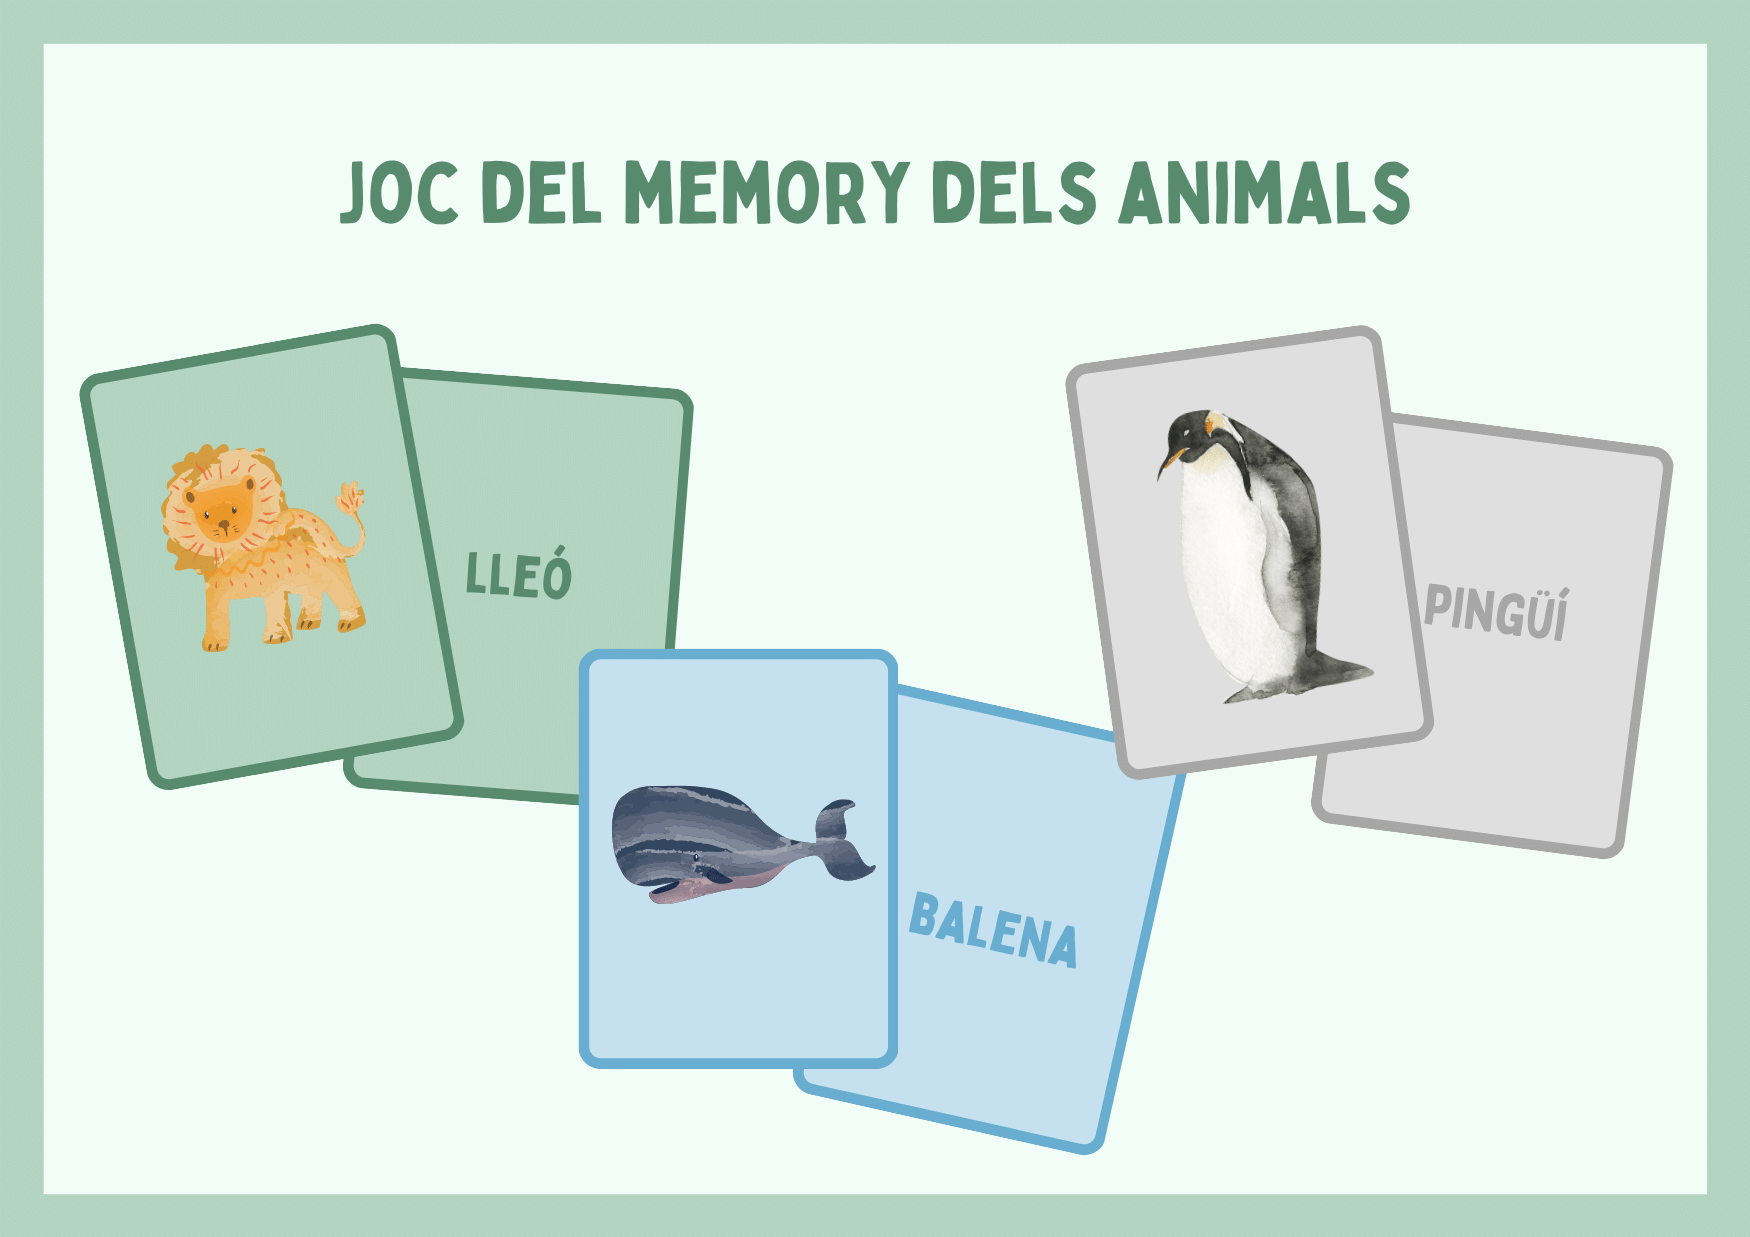 Memory dels animals